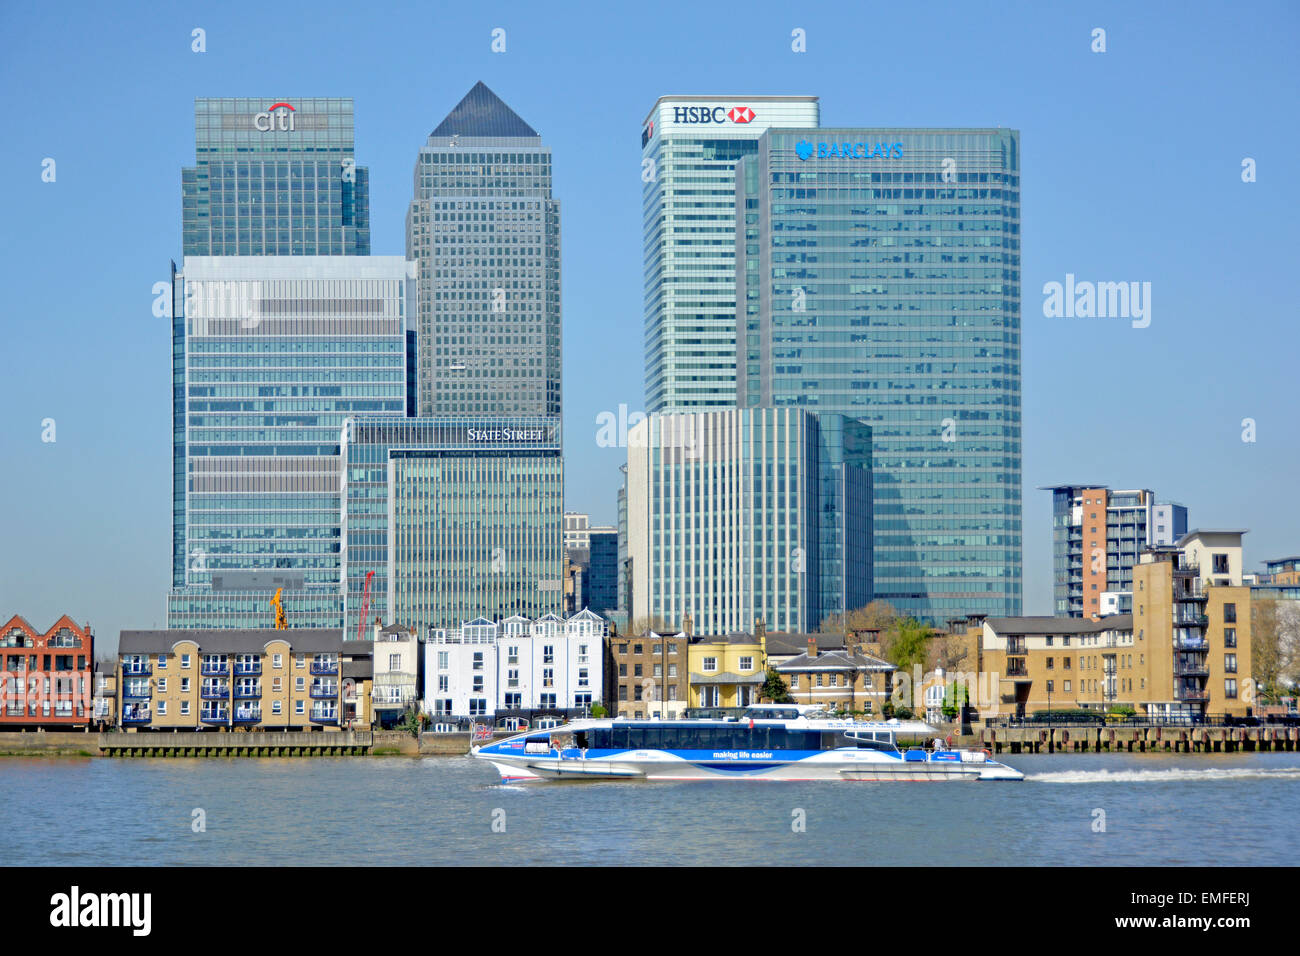 Skyline di Canary Wharf East London Docklands, con edifici bancari situati accanto al Tamigi Clipper, passando per l'Isola dei cani a Tower Hamlets, Inghilterra, Regno Unito Foto Stock